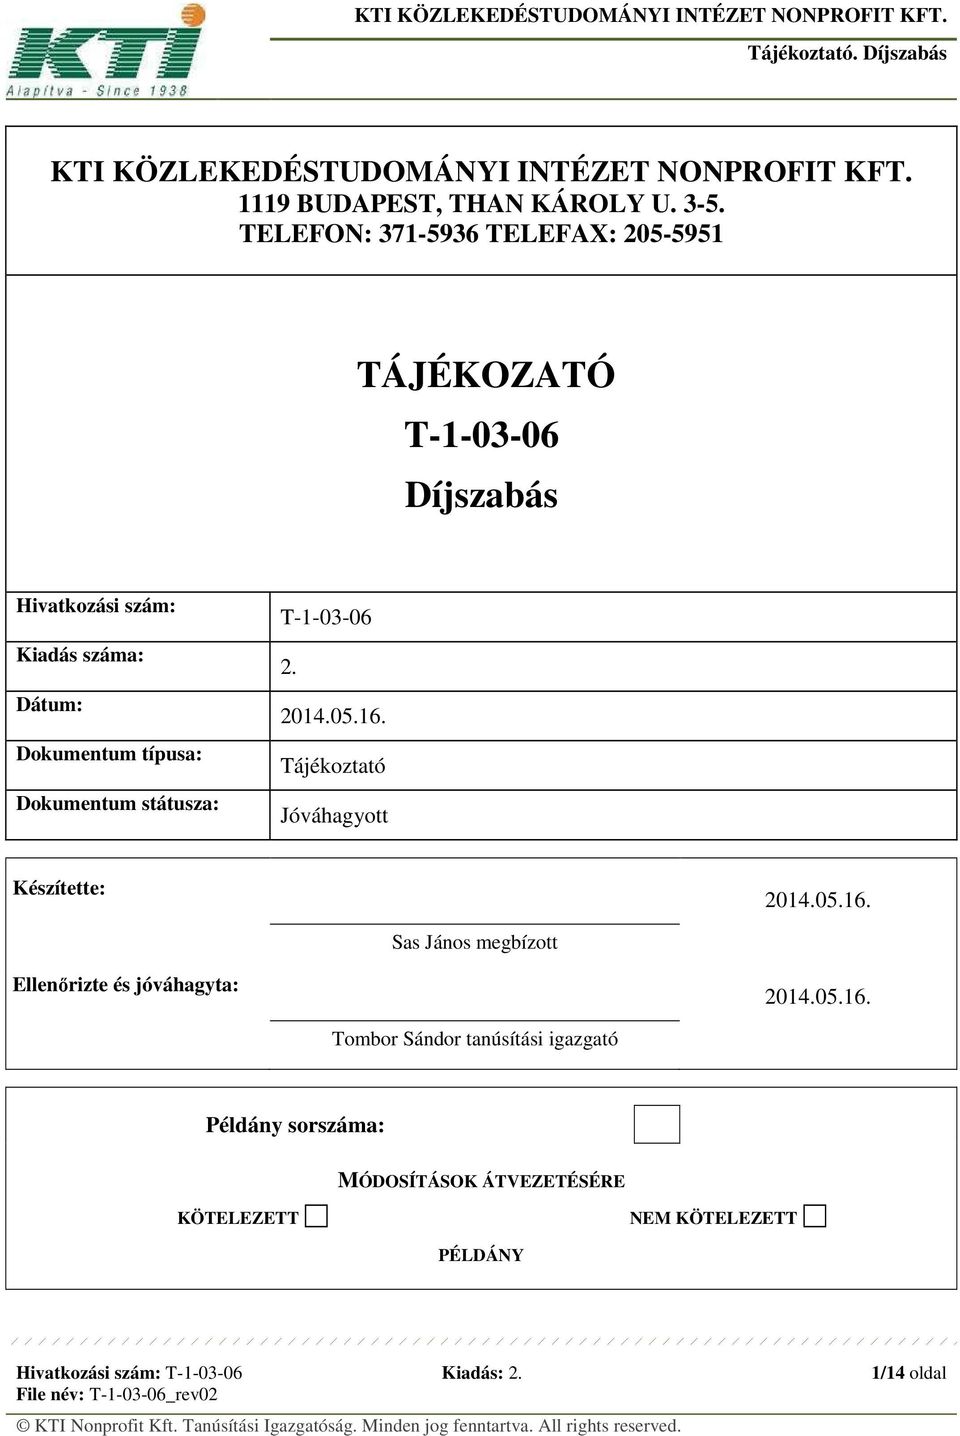 Dokumentum státusza: T-1-03-06 2. 2014.05.16. Tájékoztató Jóváhagyott Készítette: 2014.05.16. Sas János megbízott Ellenőrizte és jóváhagyta: 2014.